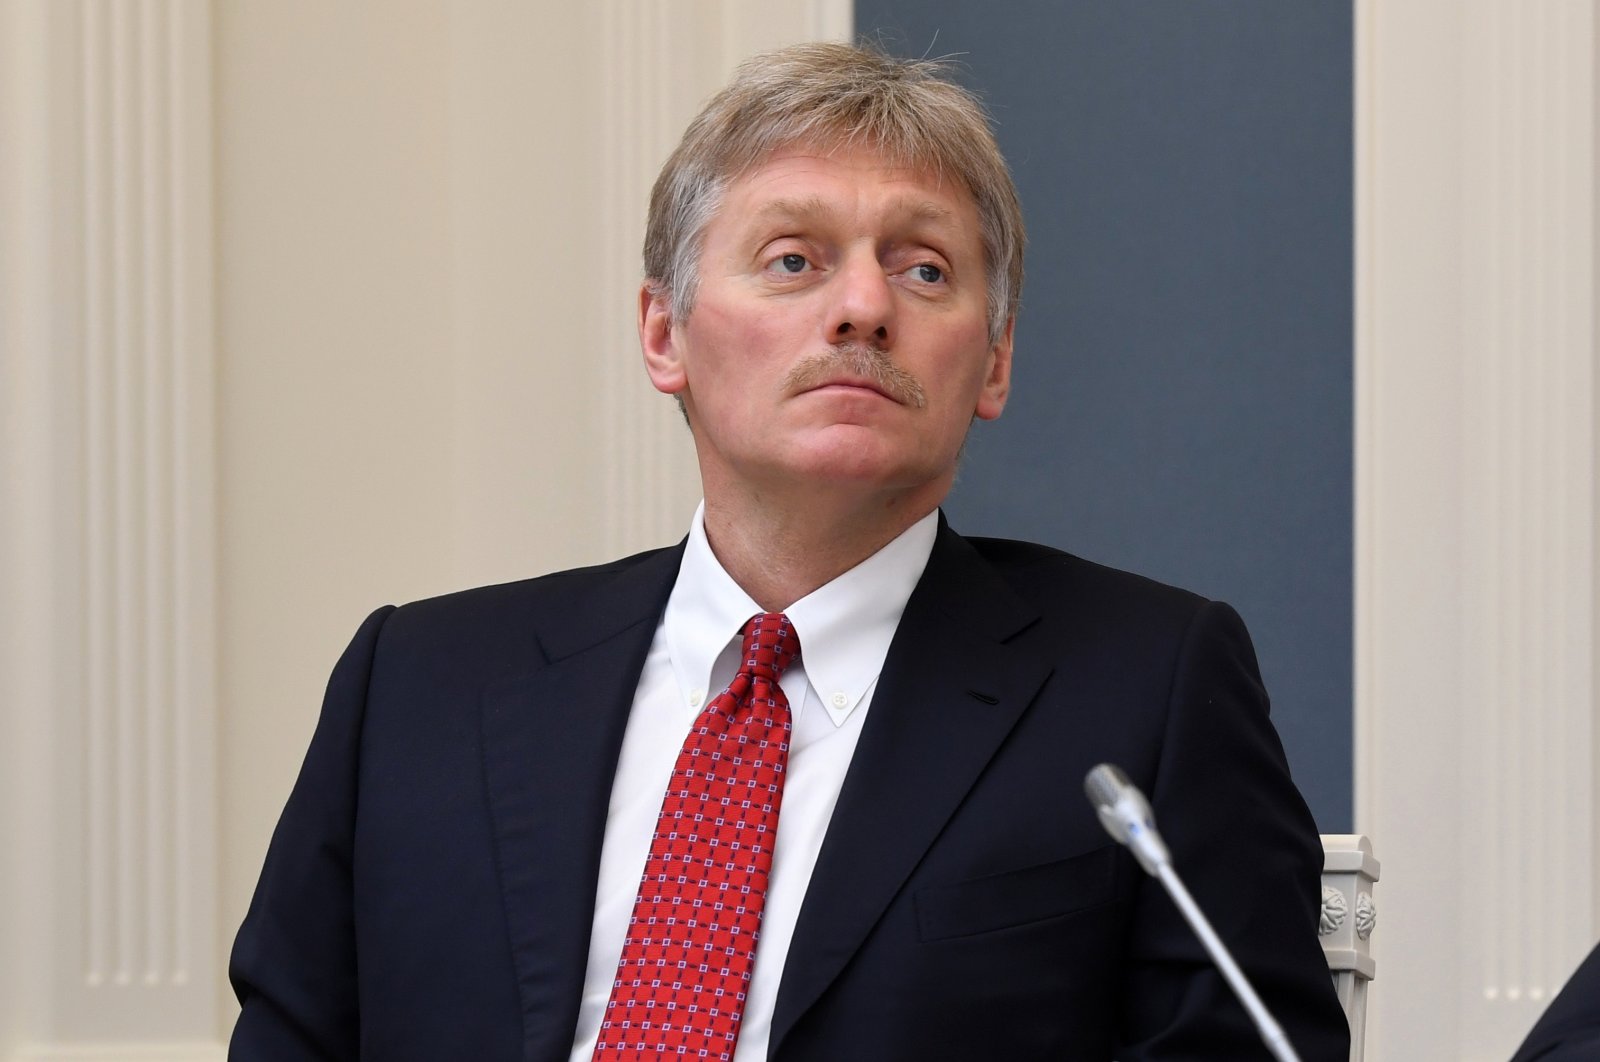 Phát ngôn viên Điện Kremlin Dmitry Peskov nói Nga sẵn sàng lắng nghe nếu Anh kháng cáo vụ 2 công dân Anh bị kết án tử khi tham chiến ở Ukraine. Ảnh: AP